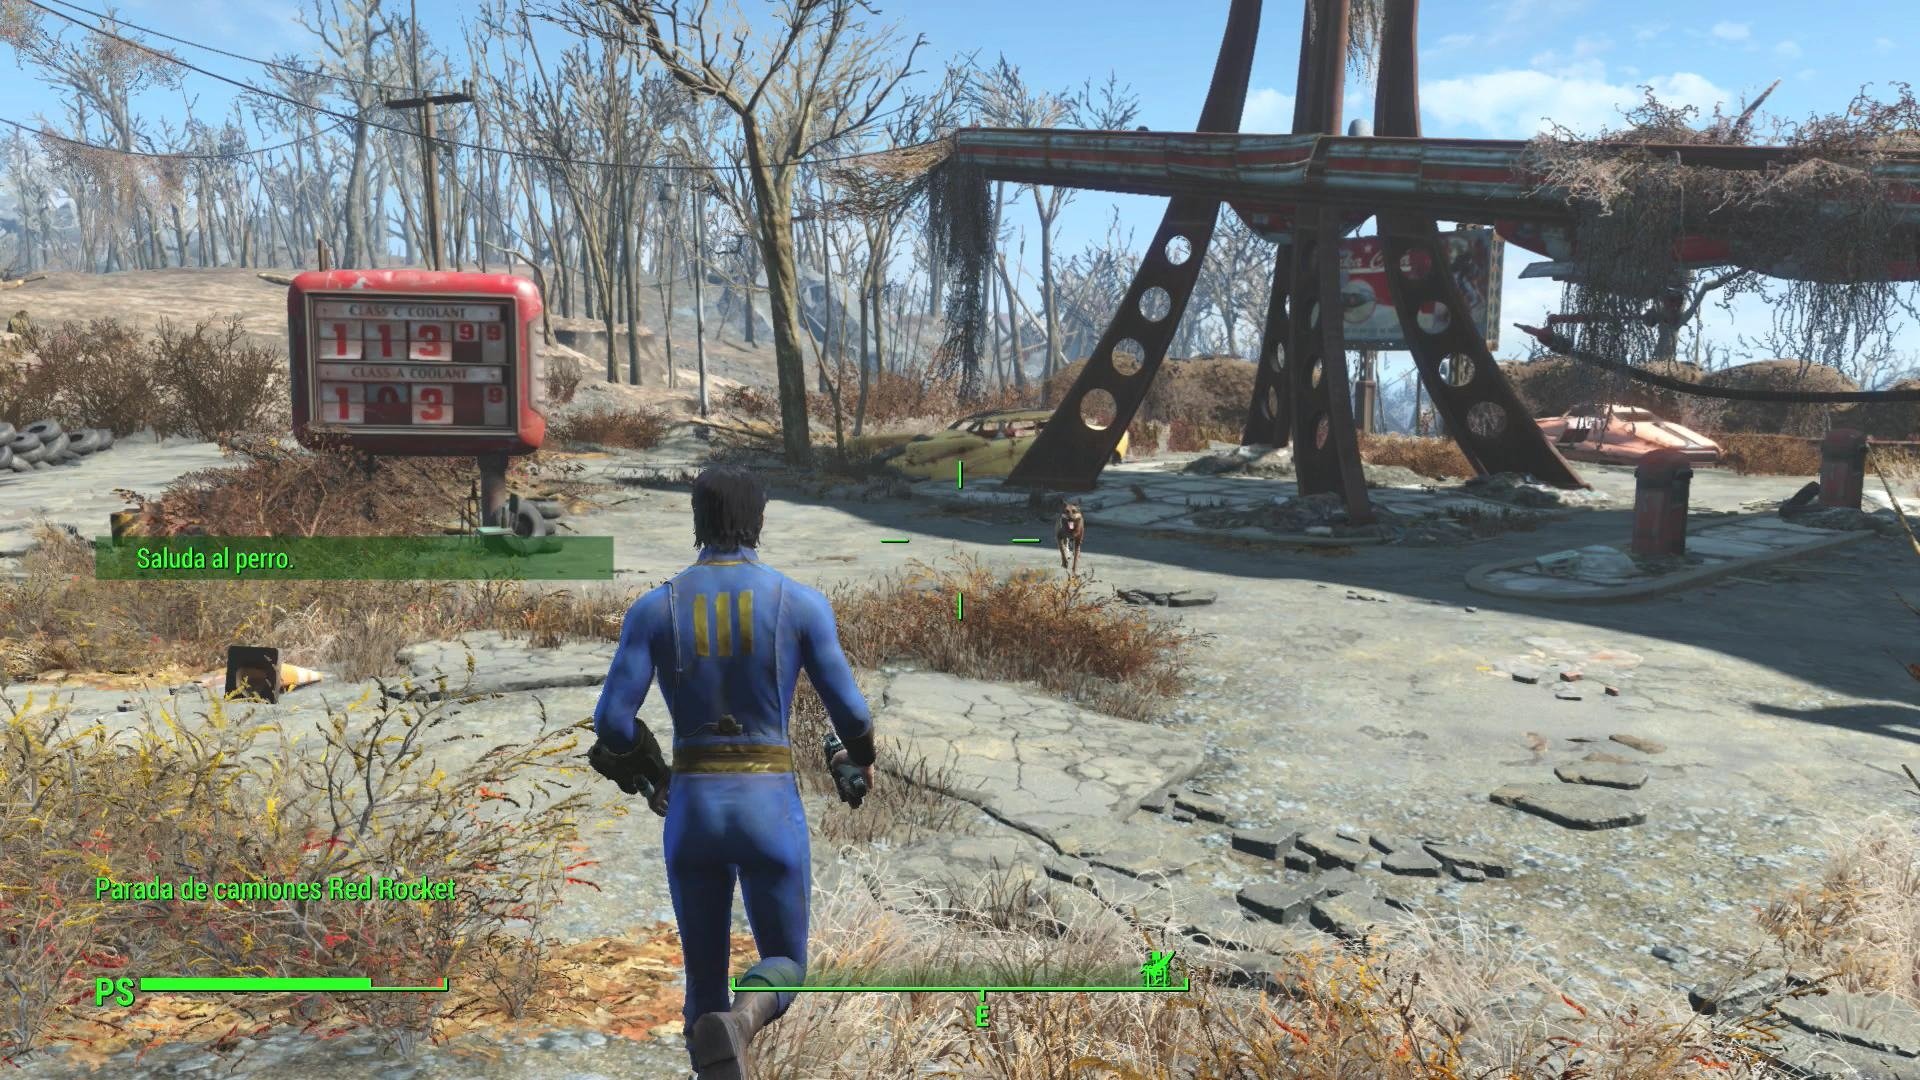 Unikají screeny z filnální PS4 verze Fallout 4